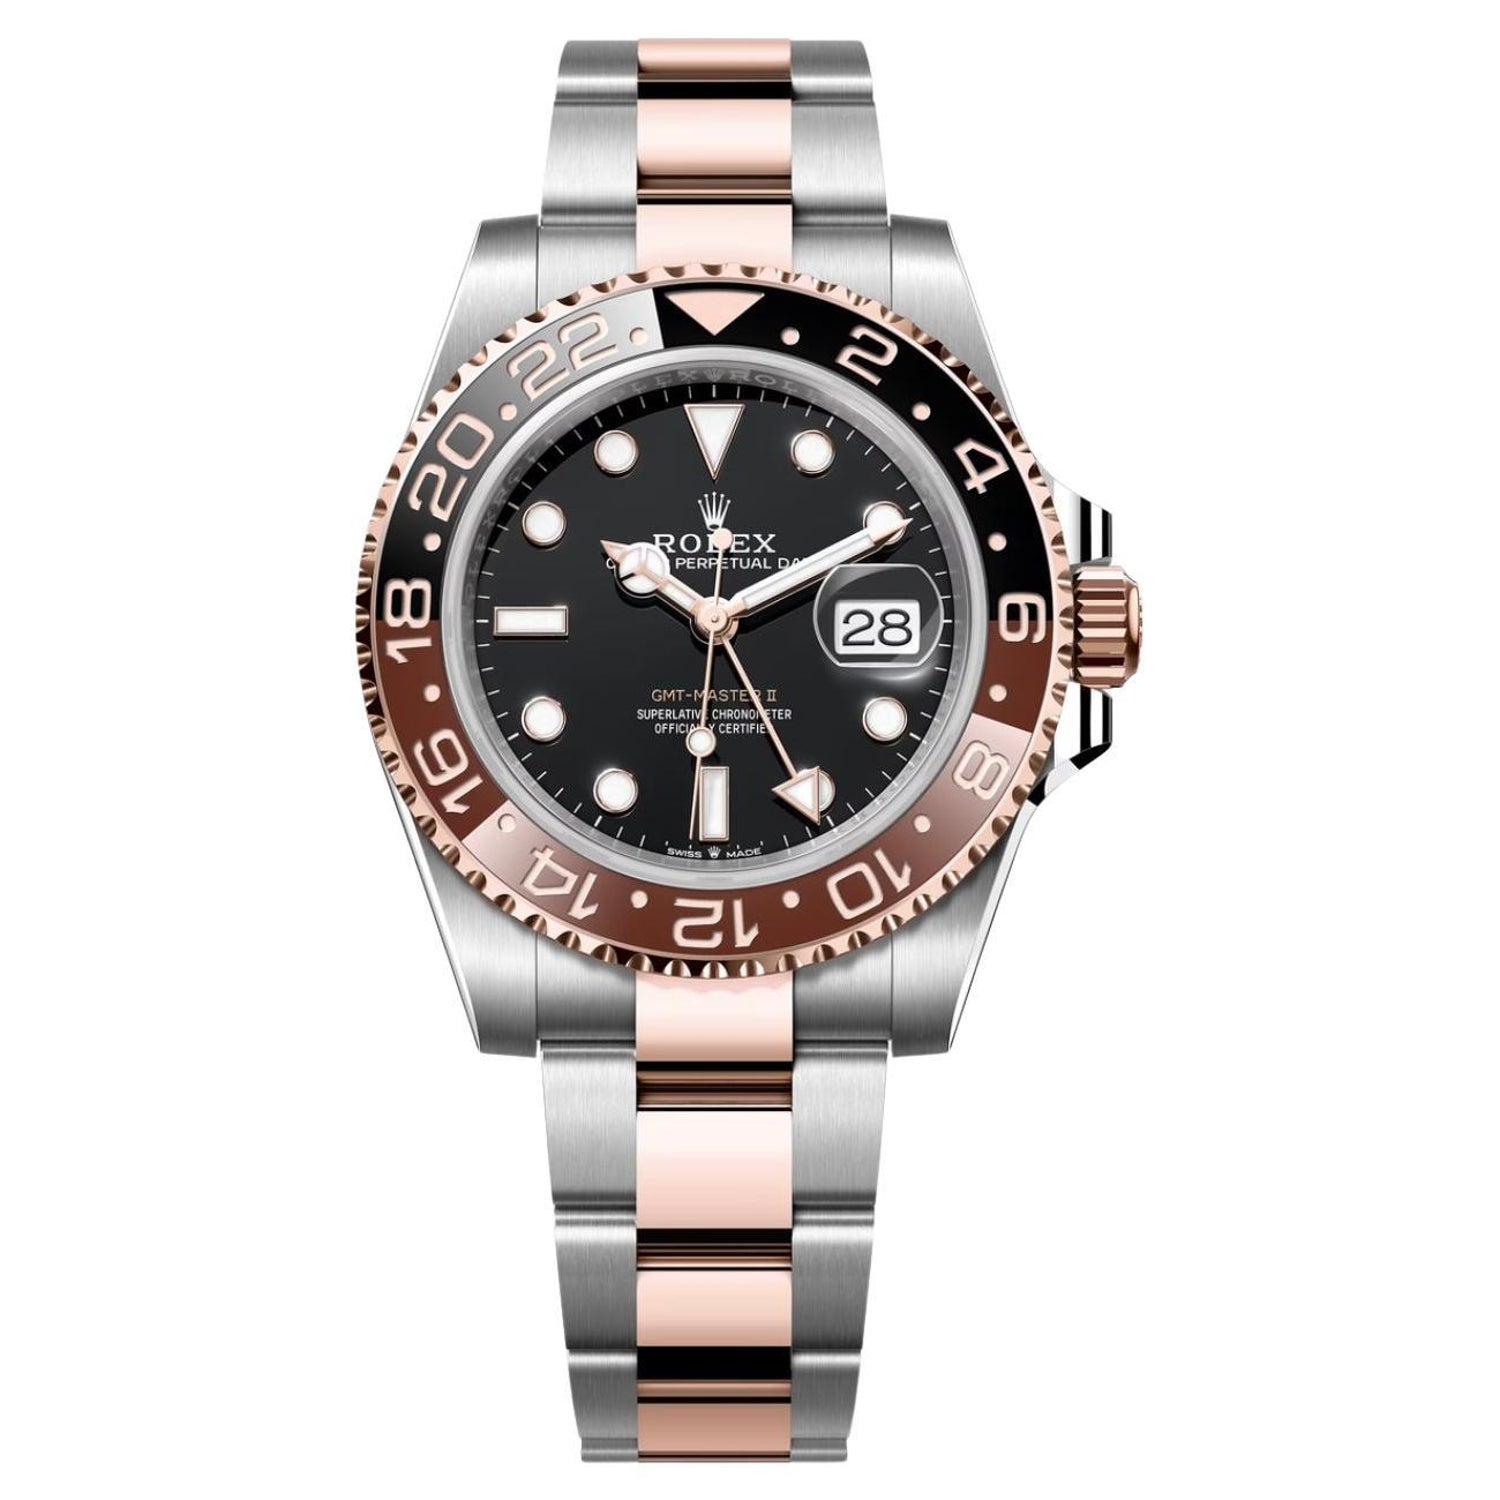 Rolex Sea-Dweller Deepsea in Oystersteel in black watch For Sale at 1stDibs